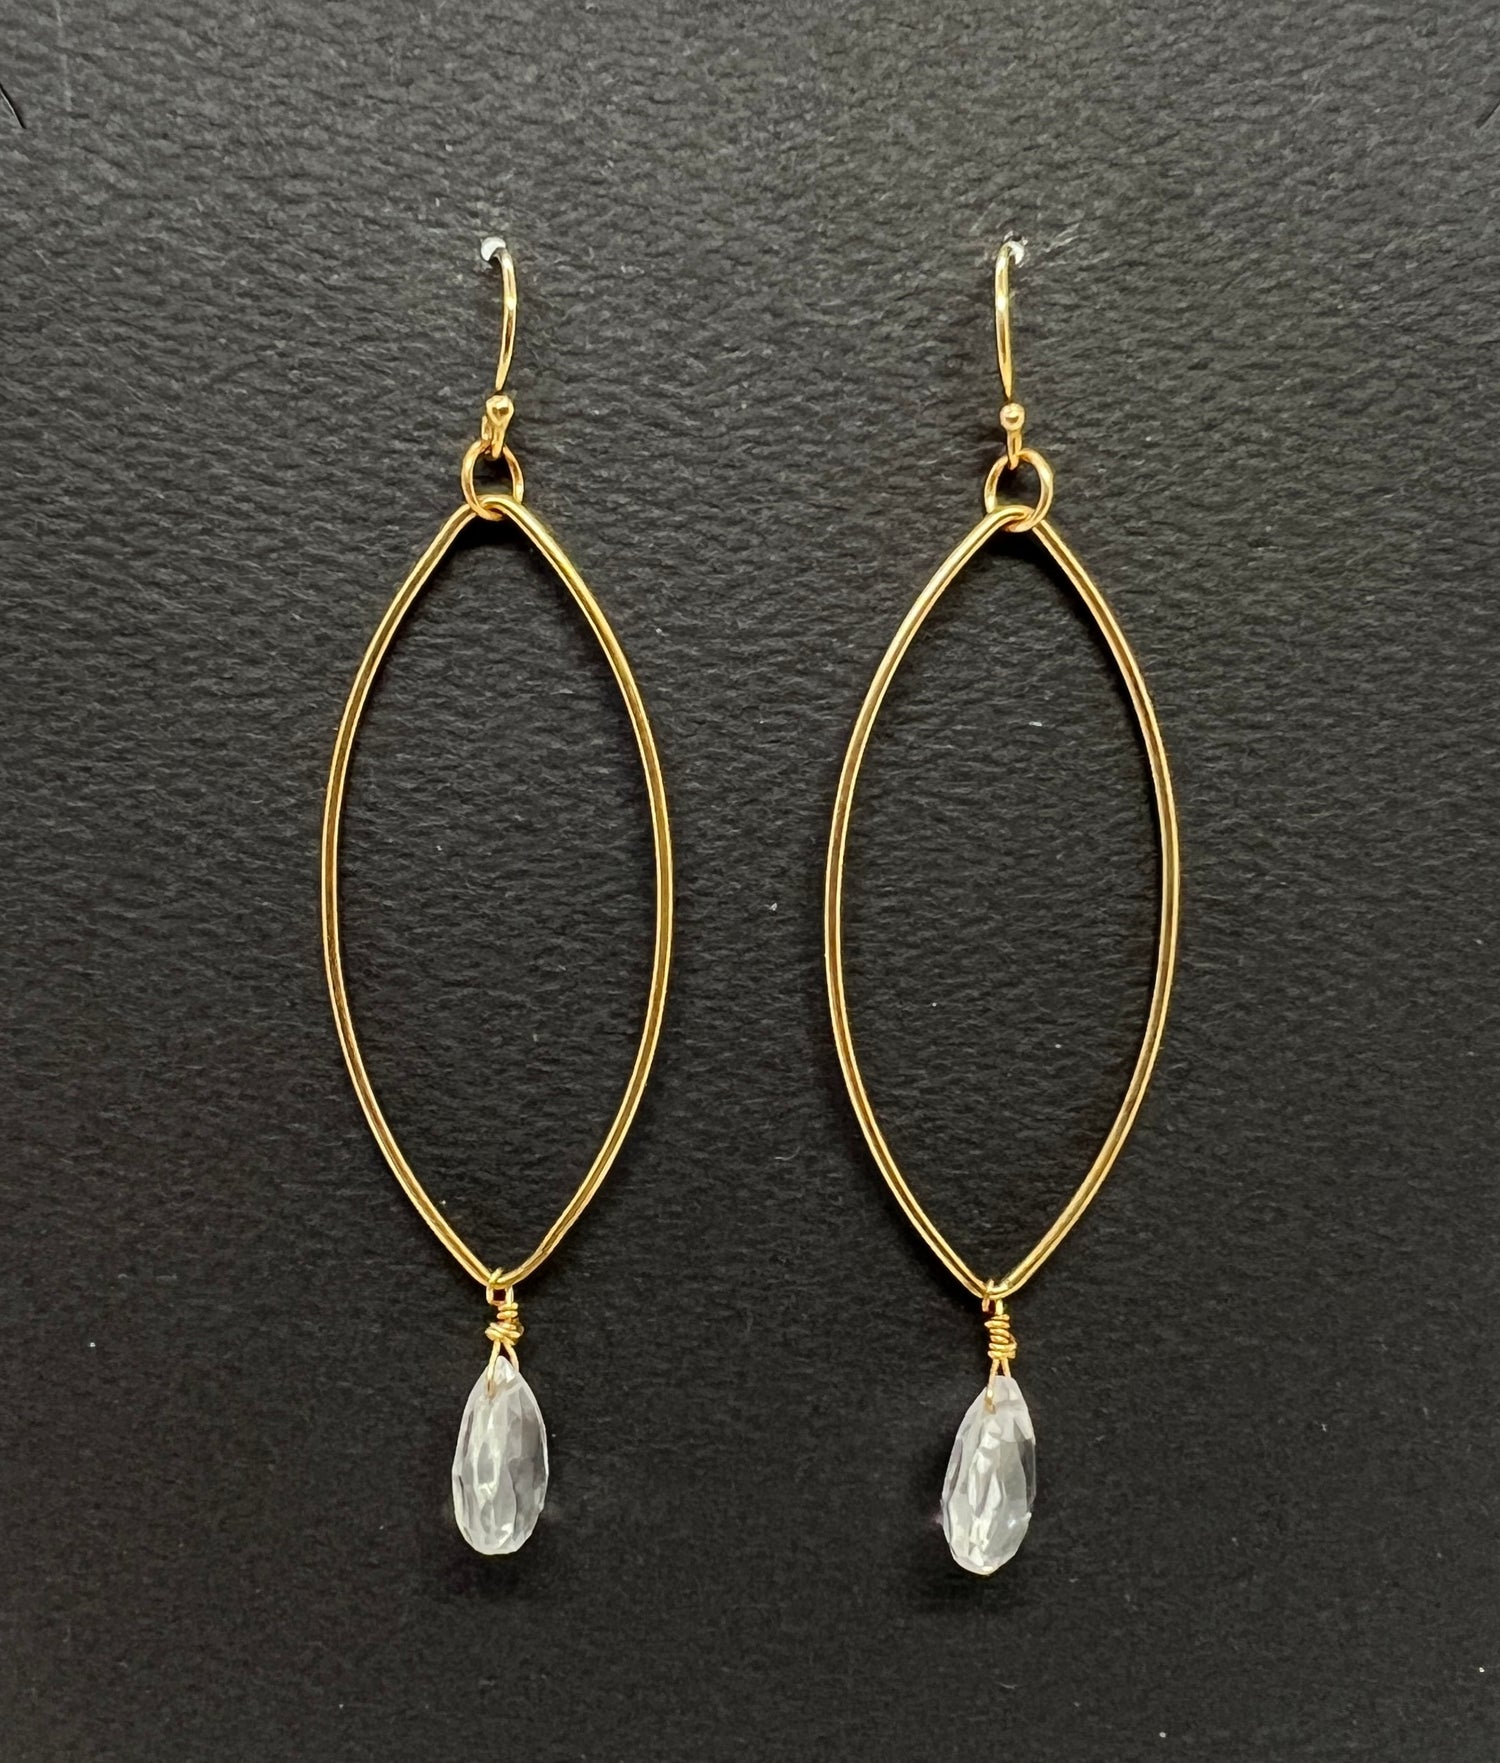 Genuine White Quartz and Gold Hoop Dangle Earrings | Avery Blake Jewelry